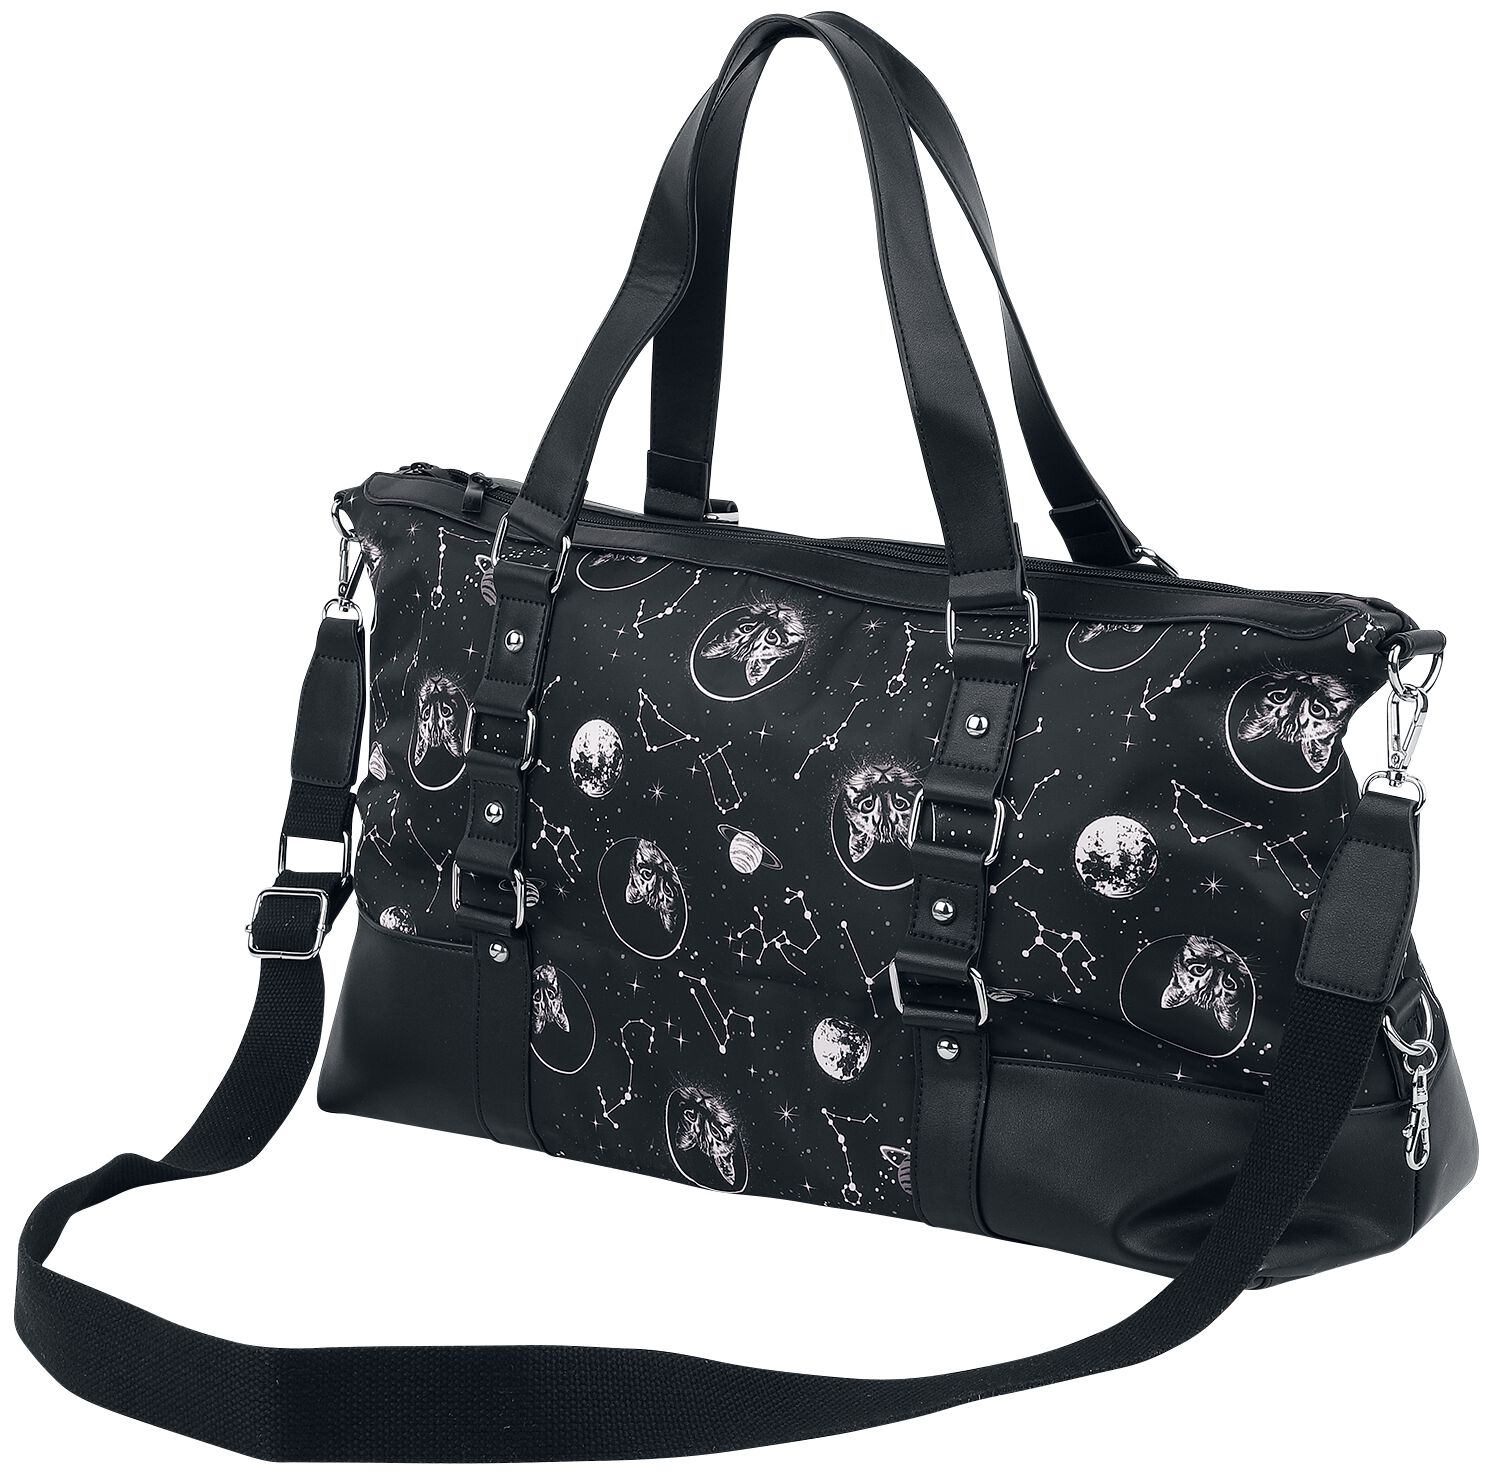 Banned Alternative - Gothic Handtasche - Space Cat - für Damen - schwarz/weiß